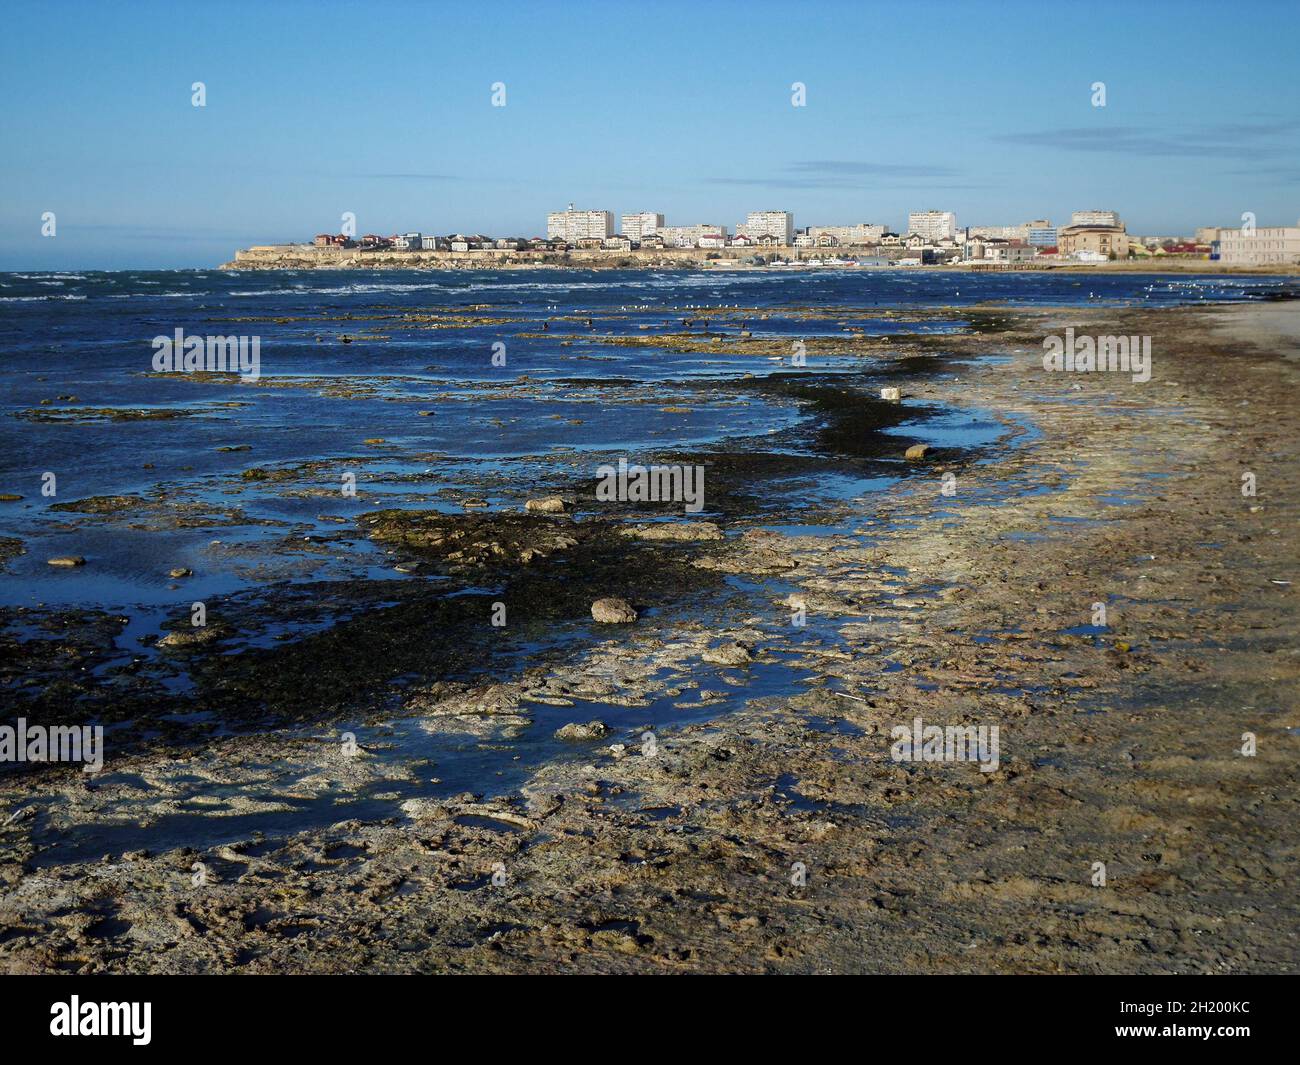 Riva paludosa del Mar Caspio. Il mare era sporco e puzzolente. Kazakistan. Regione di Mangistau. Aktau città. 05 novembre 2019 anno. Foto Stock